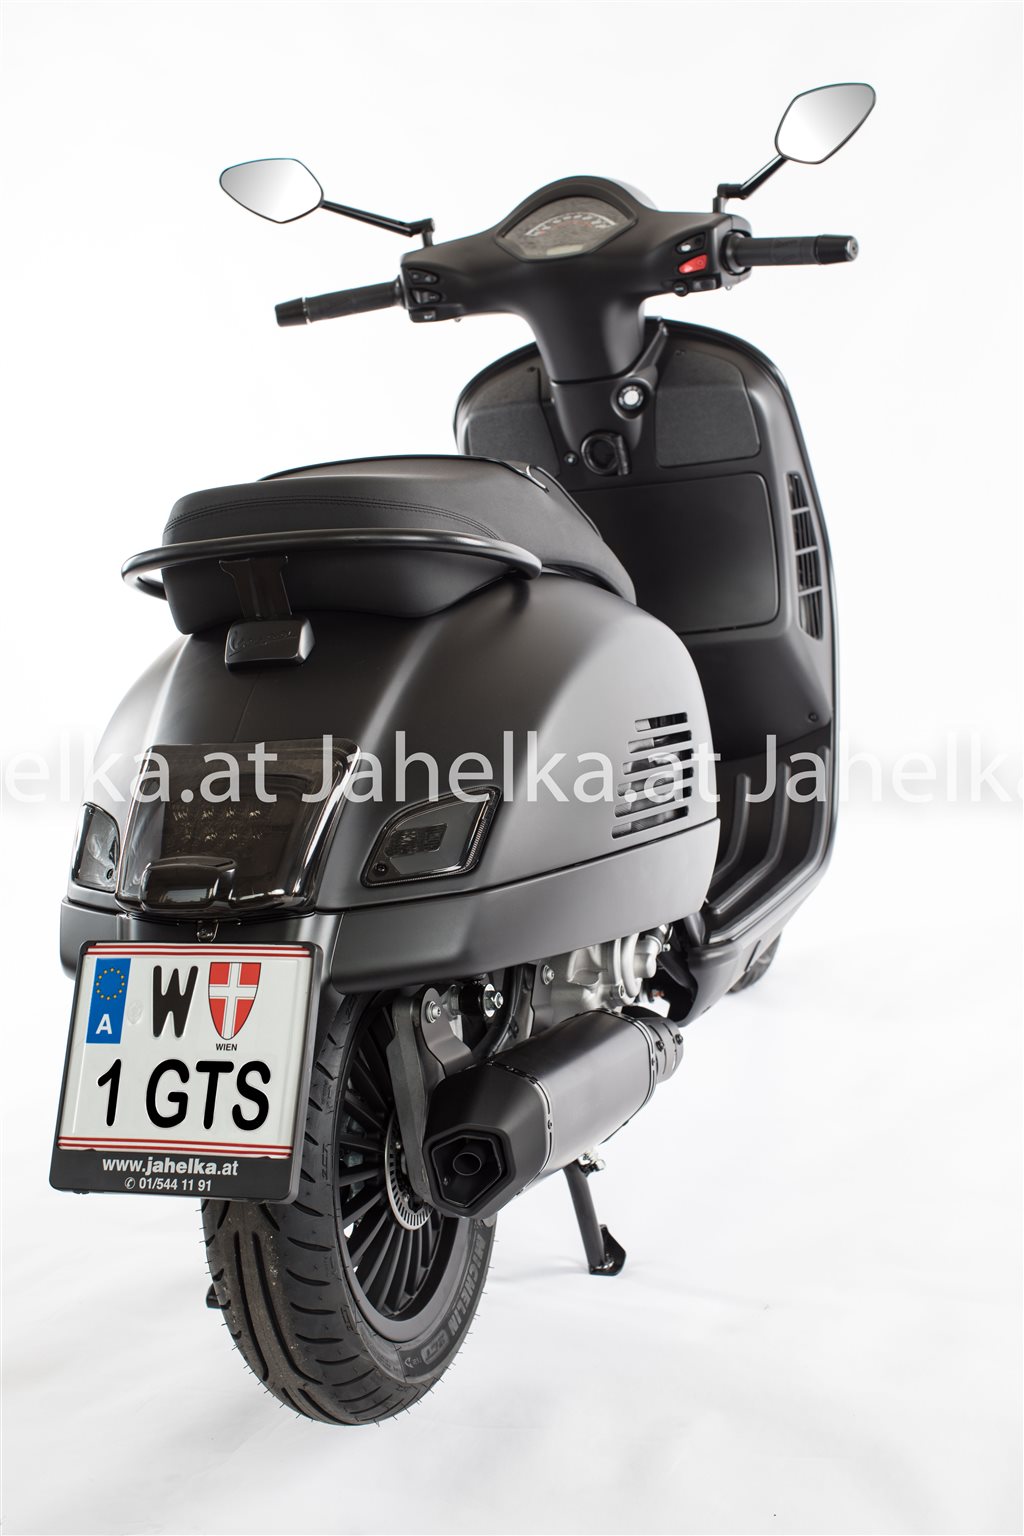 Details zum Custom-Bike Vespa GTS 300 Super Notte des Händlers Jahelka  Zweirad Gmbh & Co KG